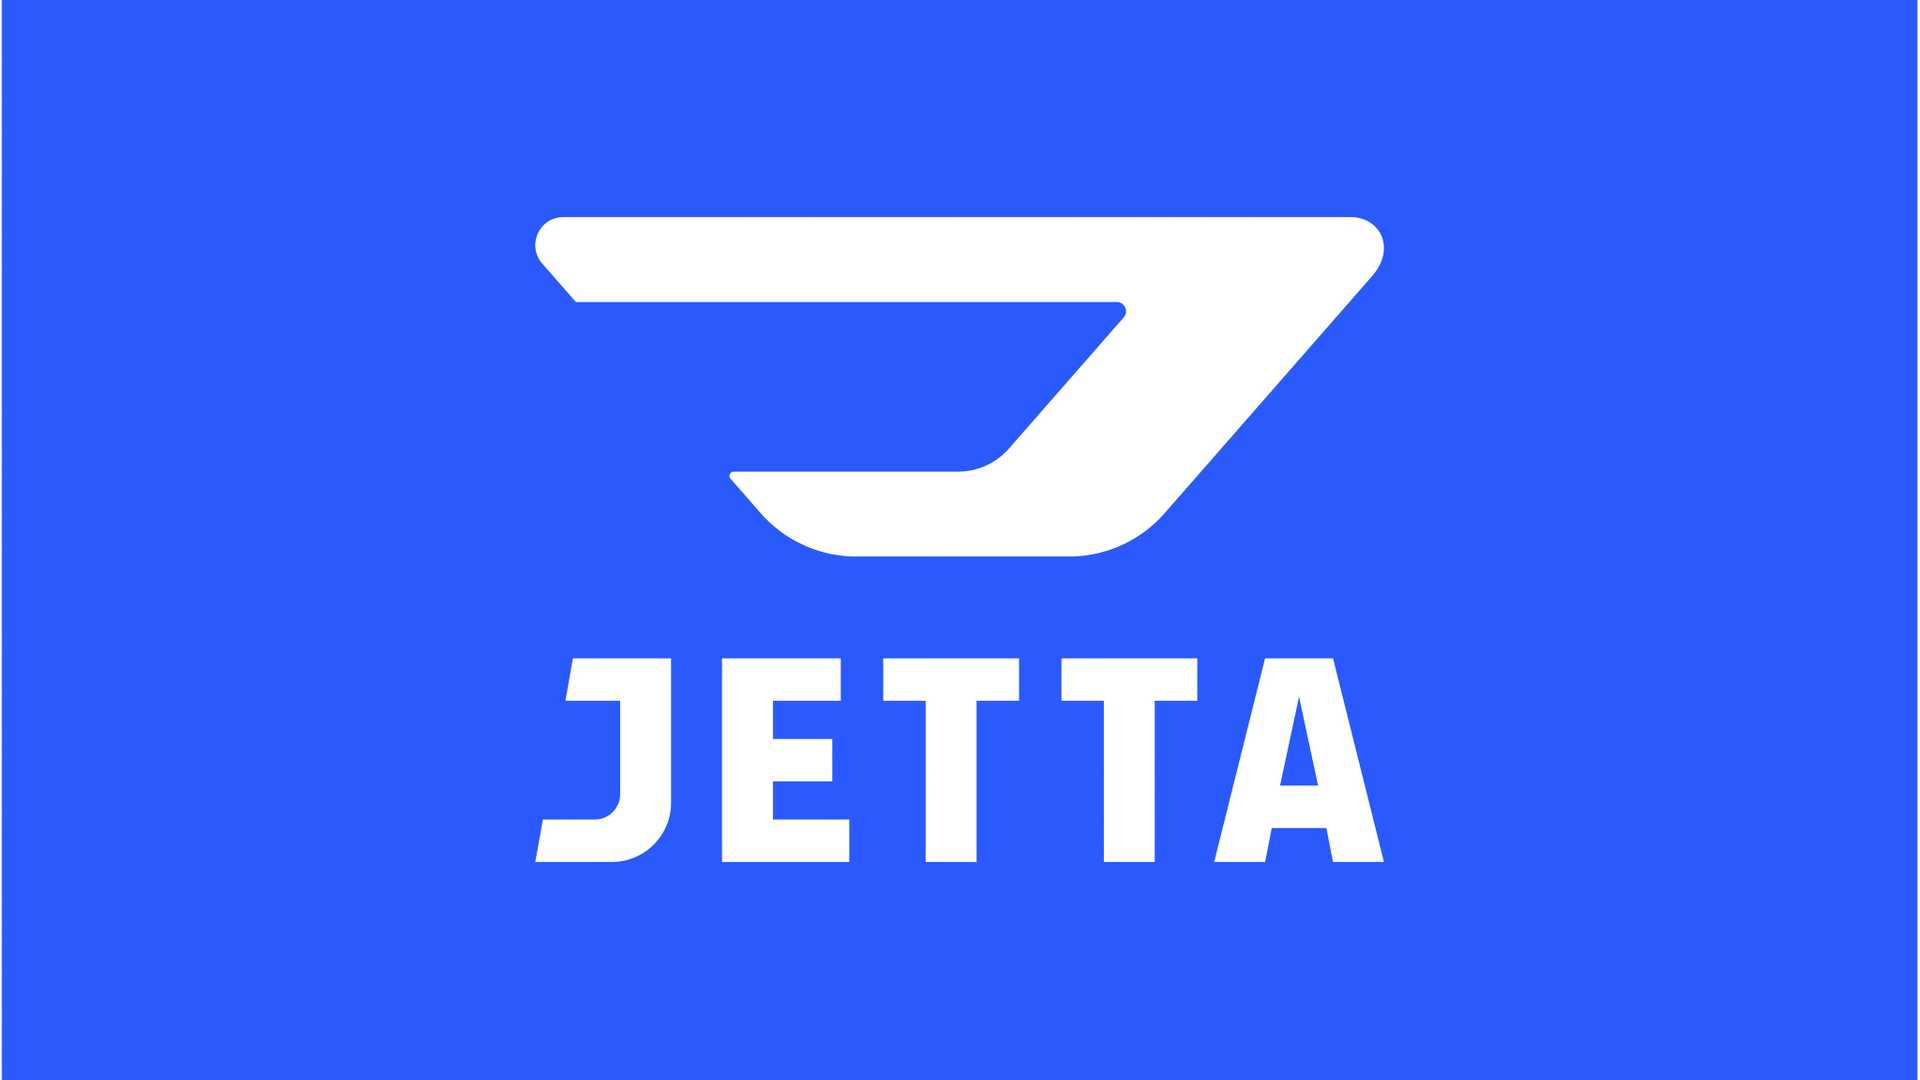 Jetta Sedan